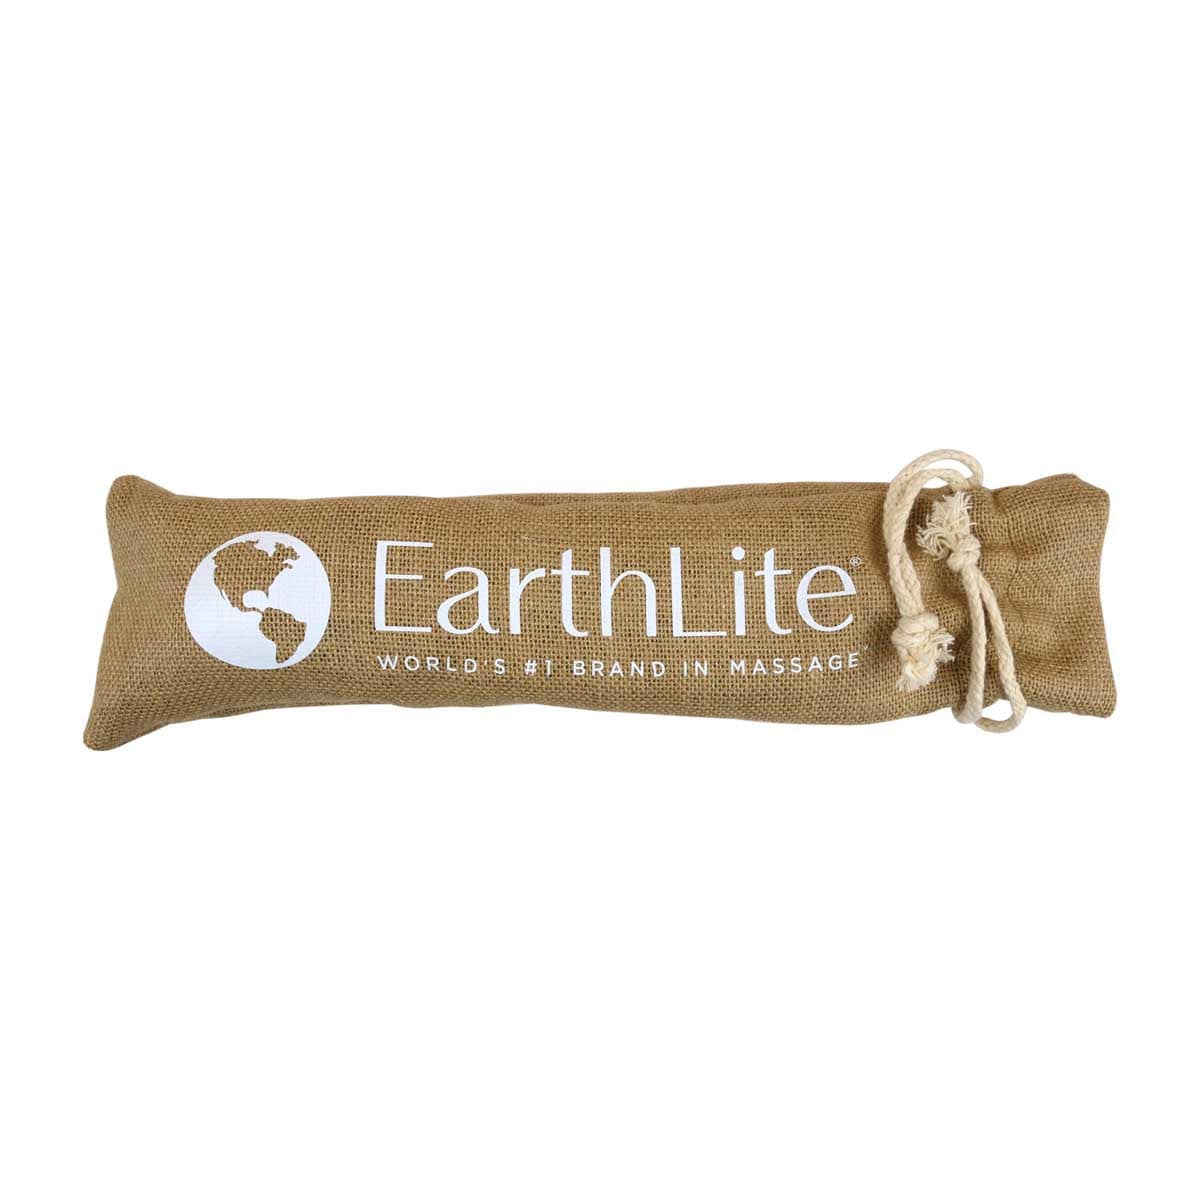 Earthlite Wooden Massage Tool Kit